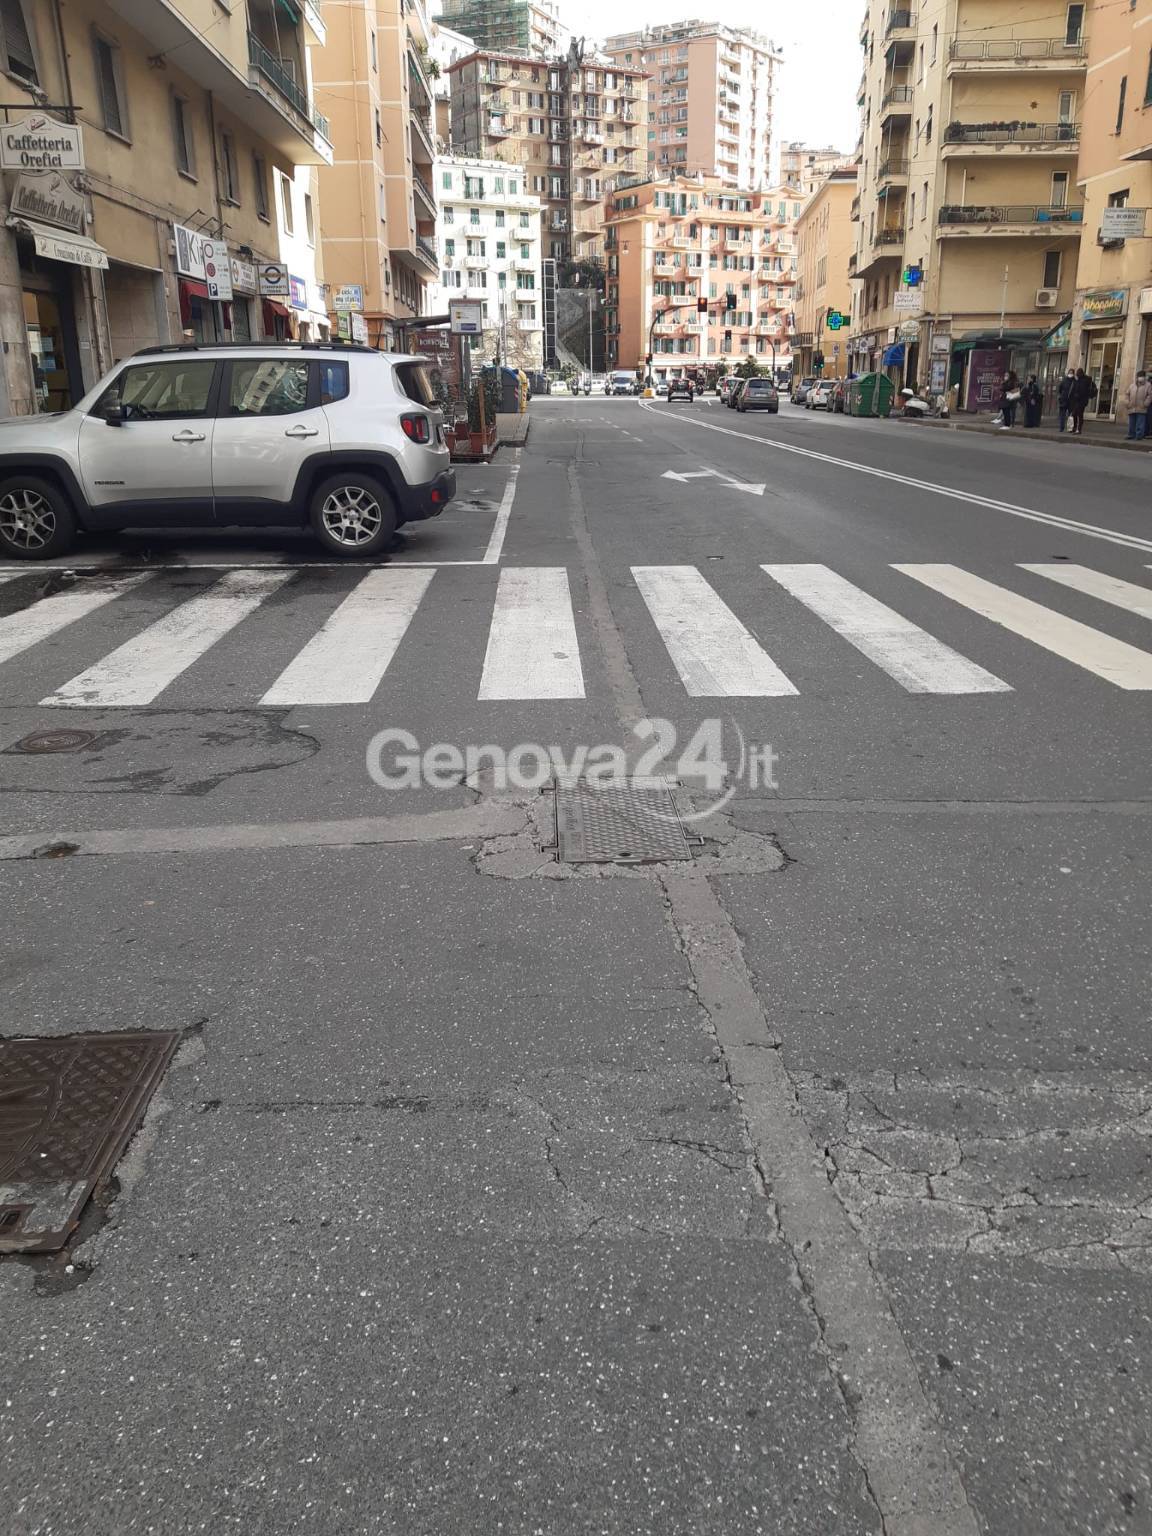 Incidente in monopattino, la situazione del manto stradale in via Monticelli